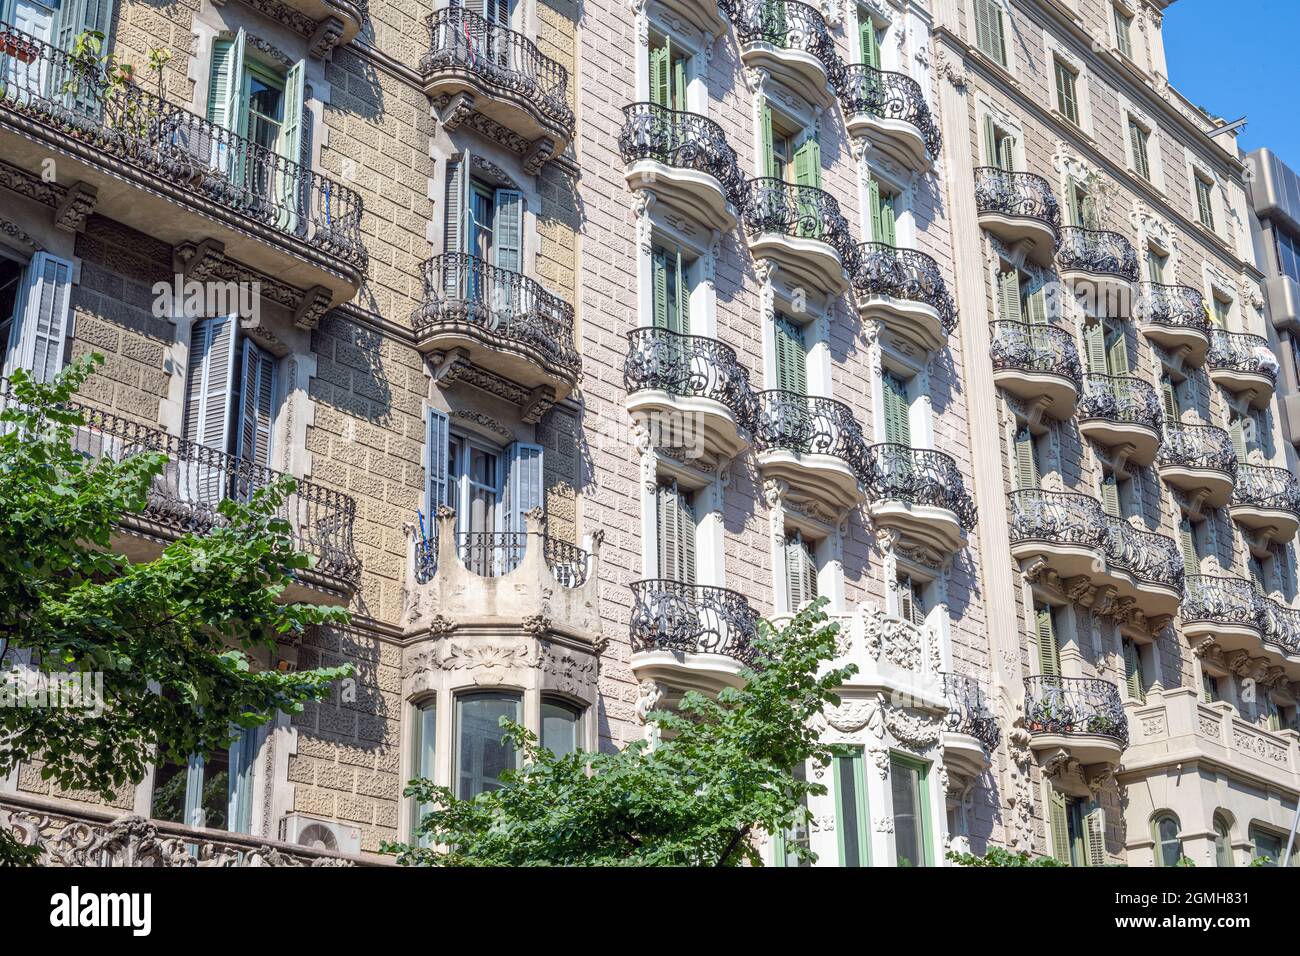 Façades de maisons typiques de quelques immeubles d'appartements à Barcelone, Espagne Banque D'Images